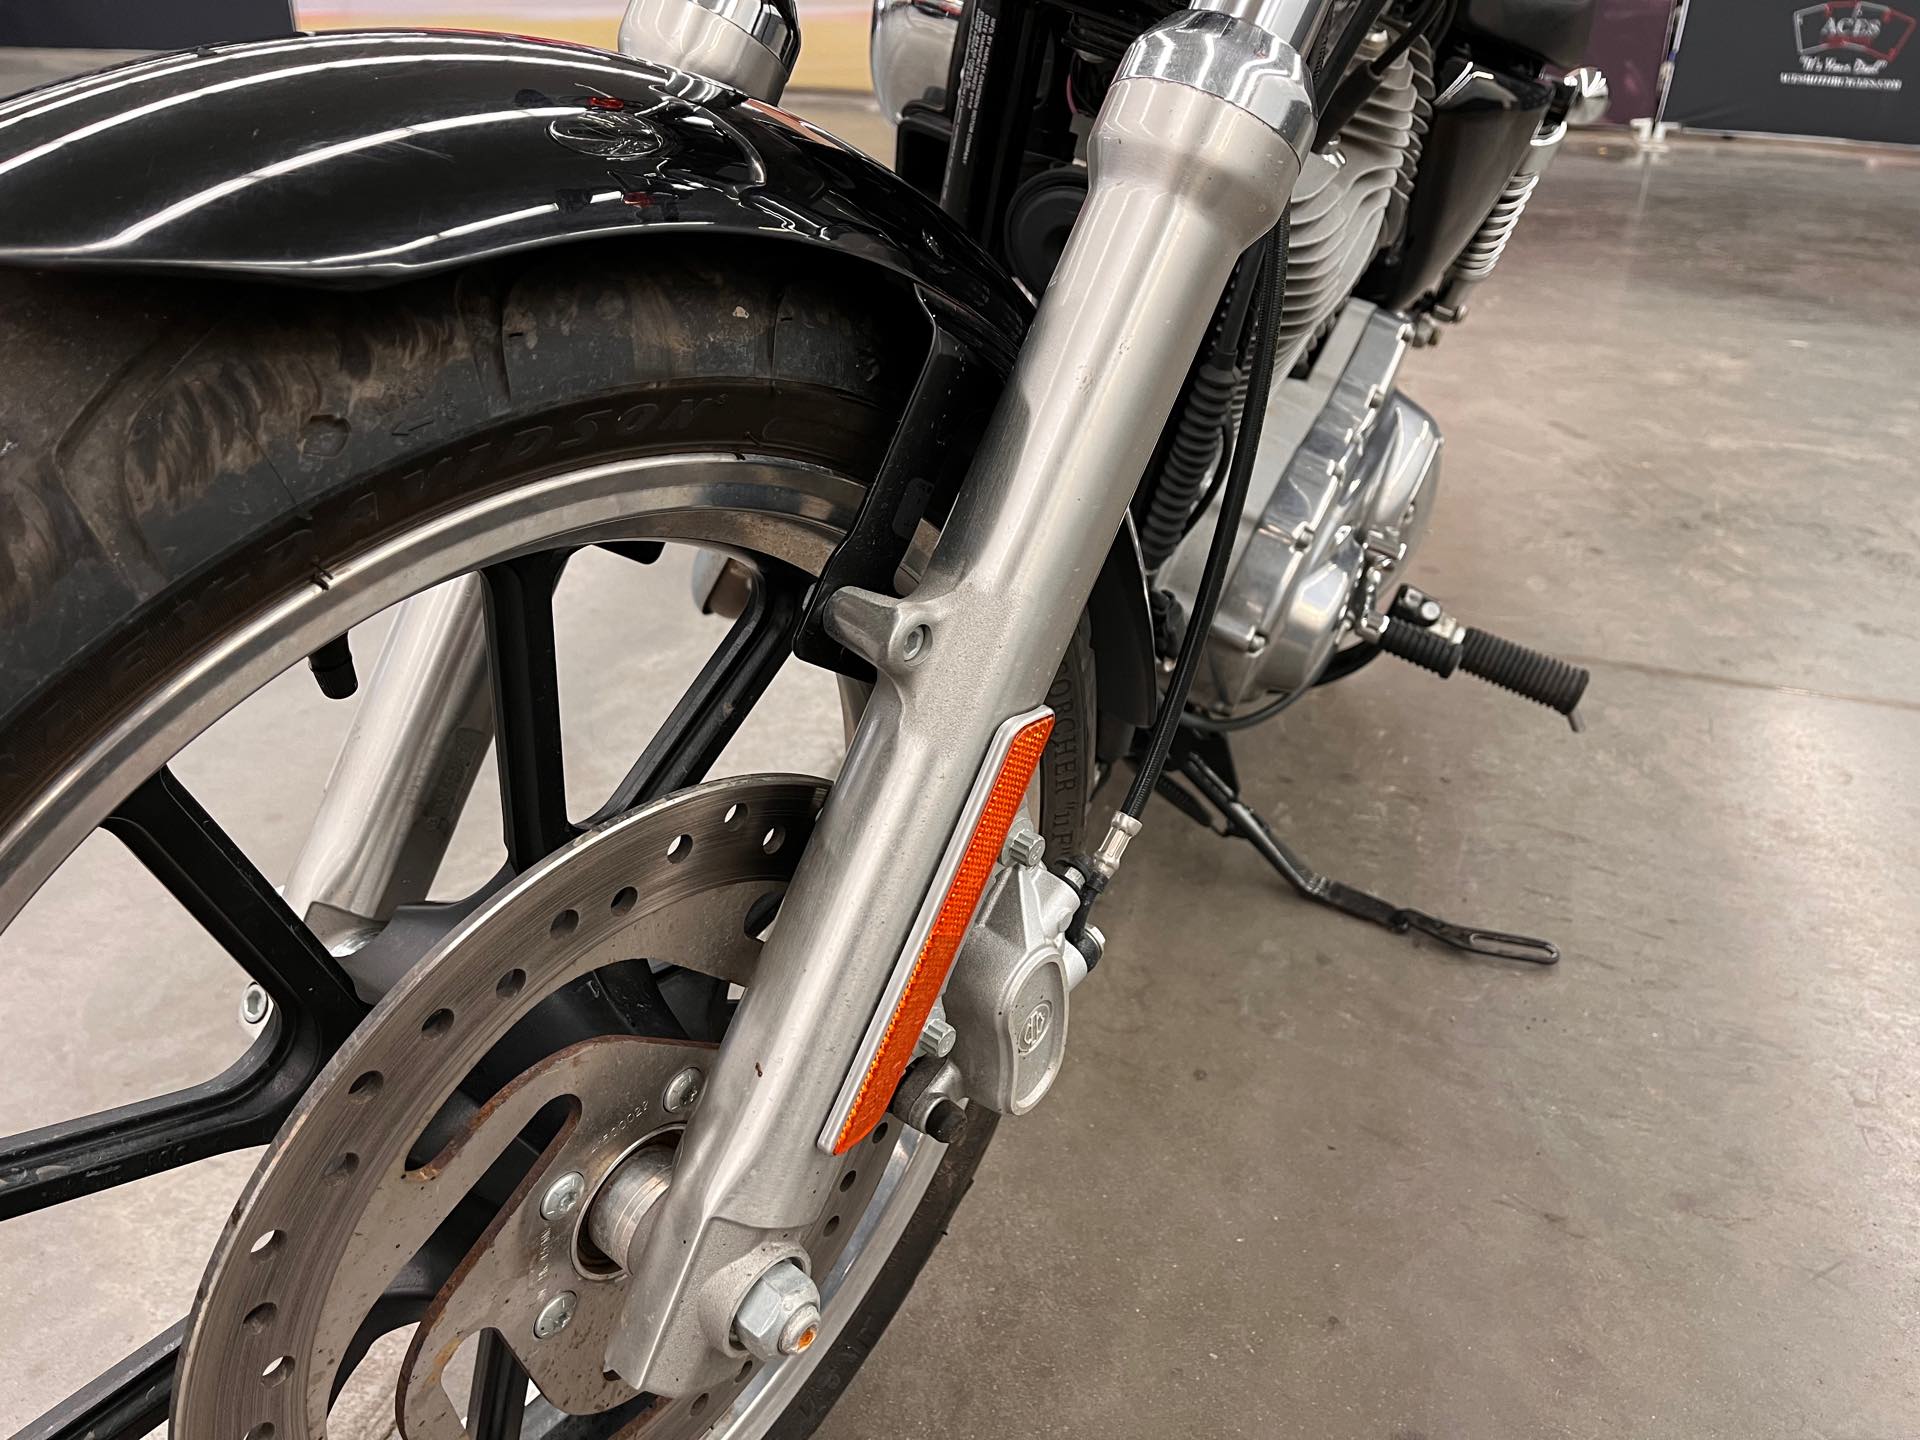 2015 Harley-Davidson Sportster SuperLow at Aces Motorcycles - Denver